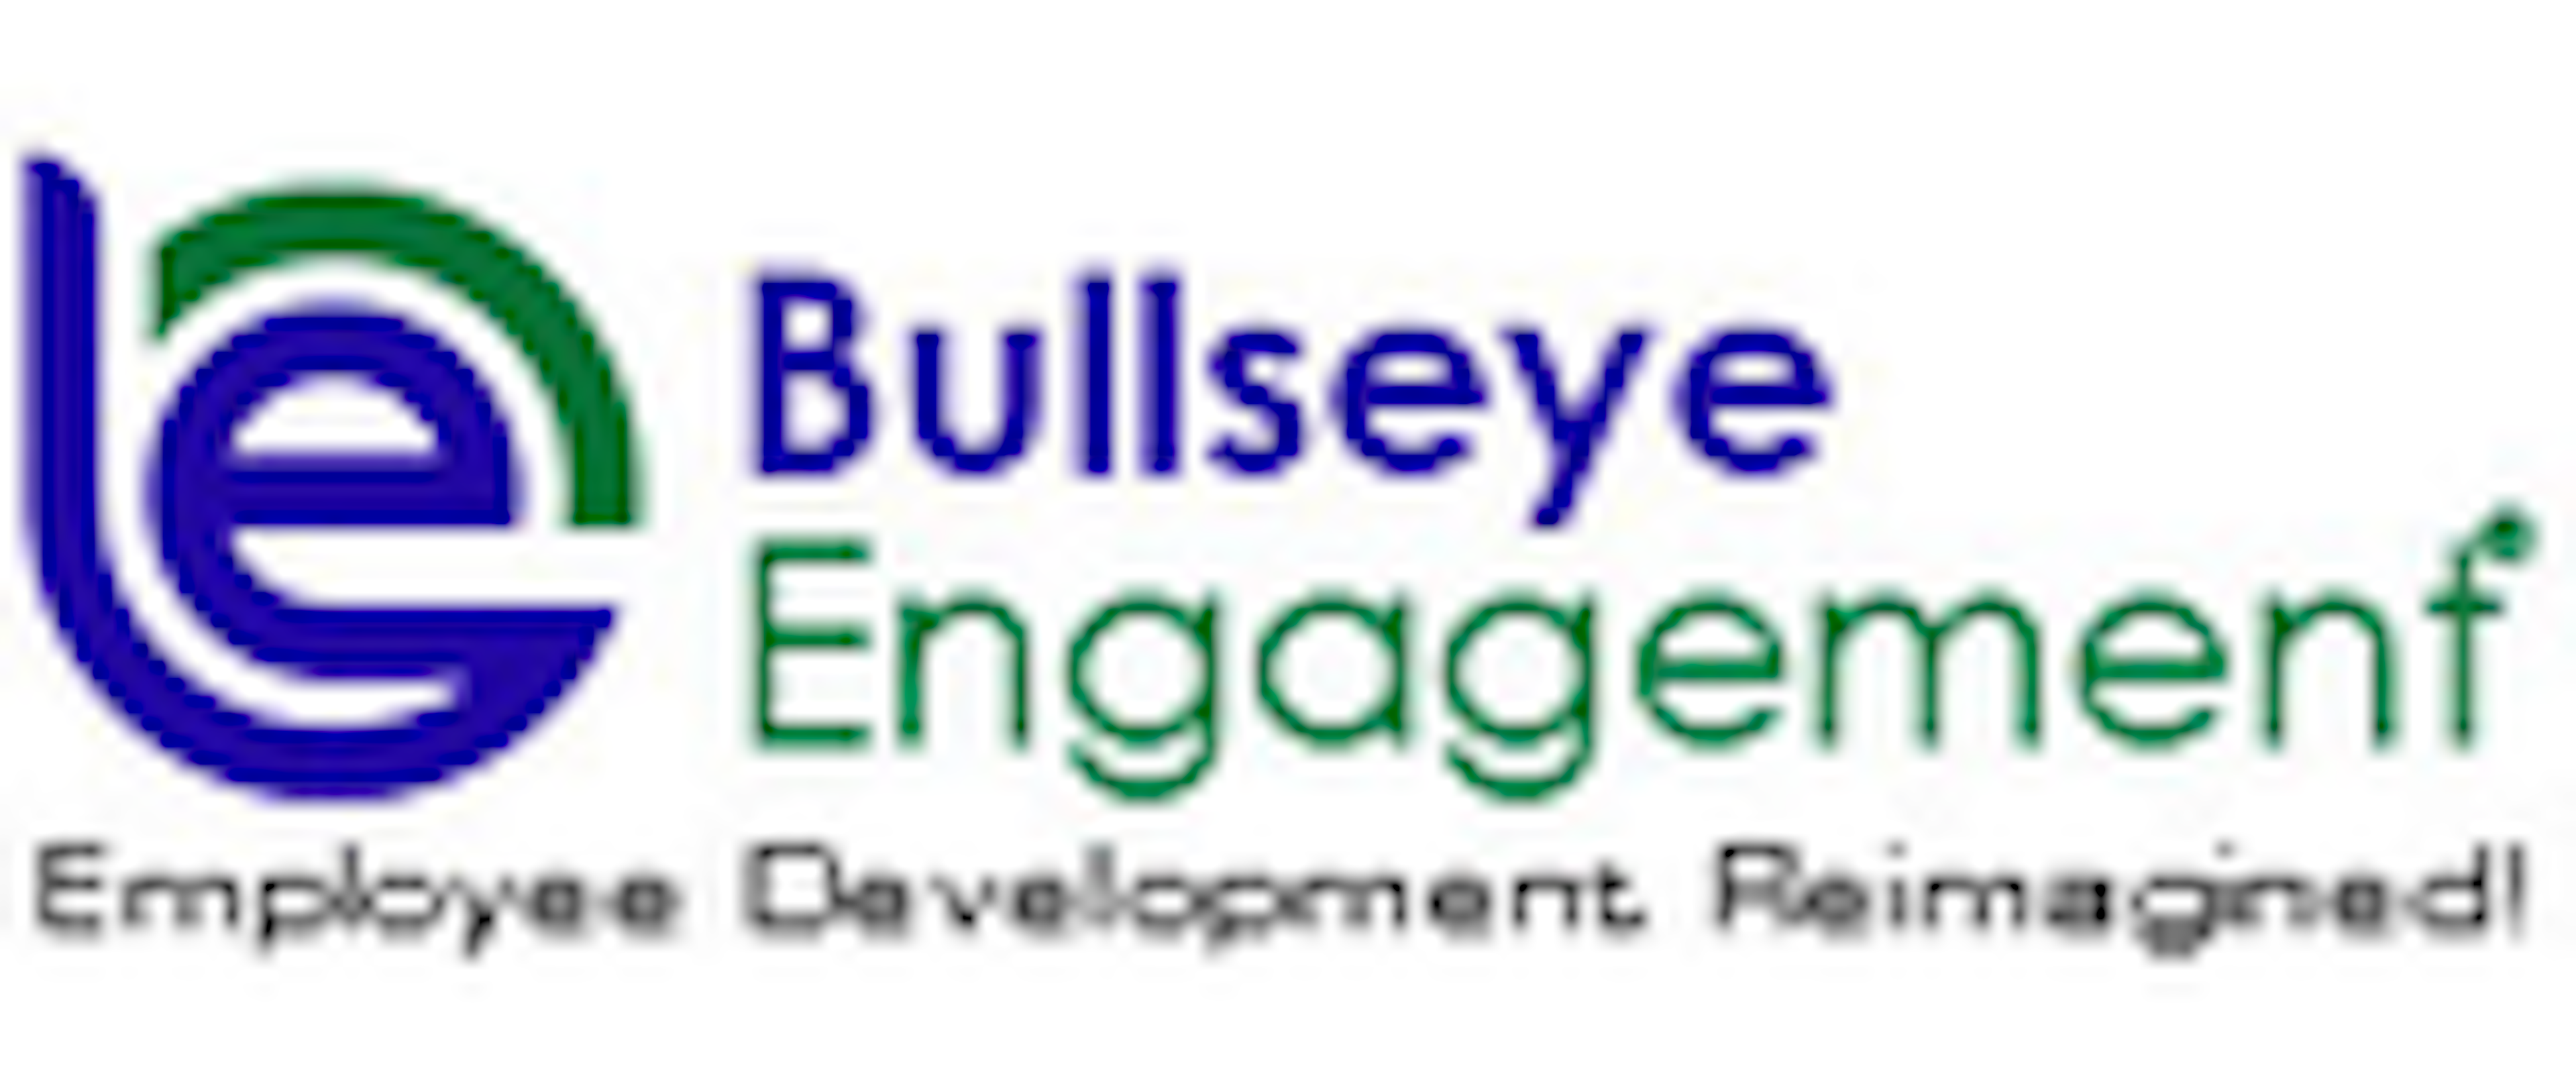 BullseyeEngagement Employee Development Solutions Logo